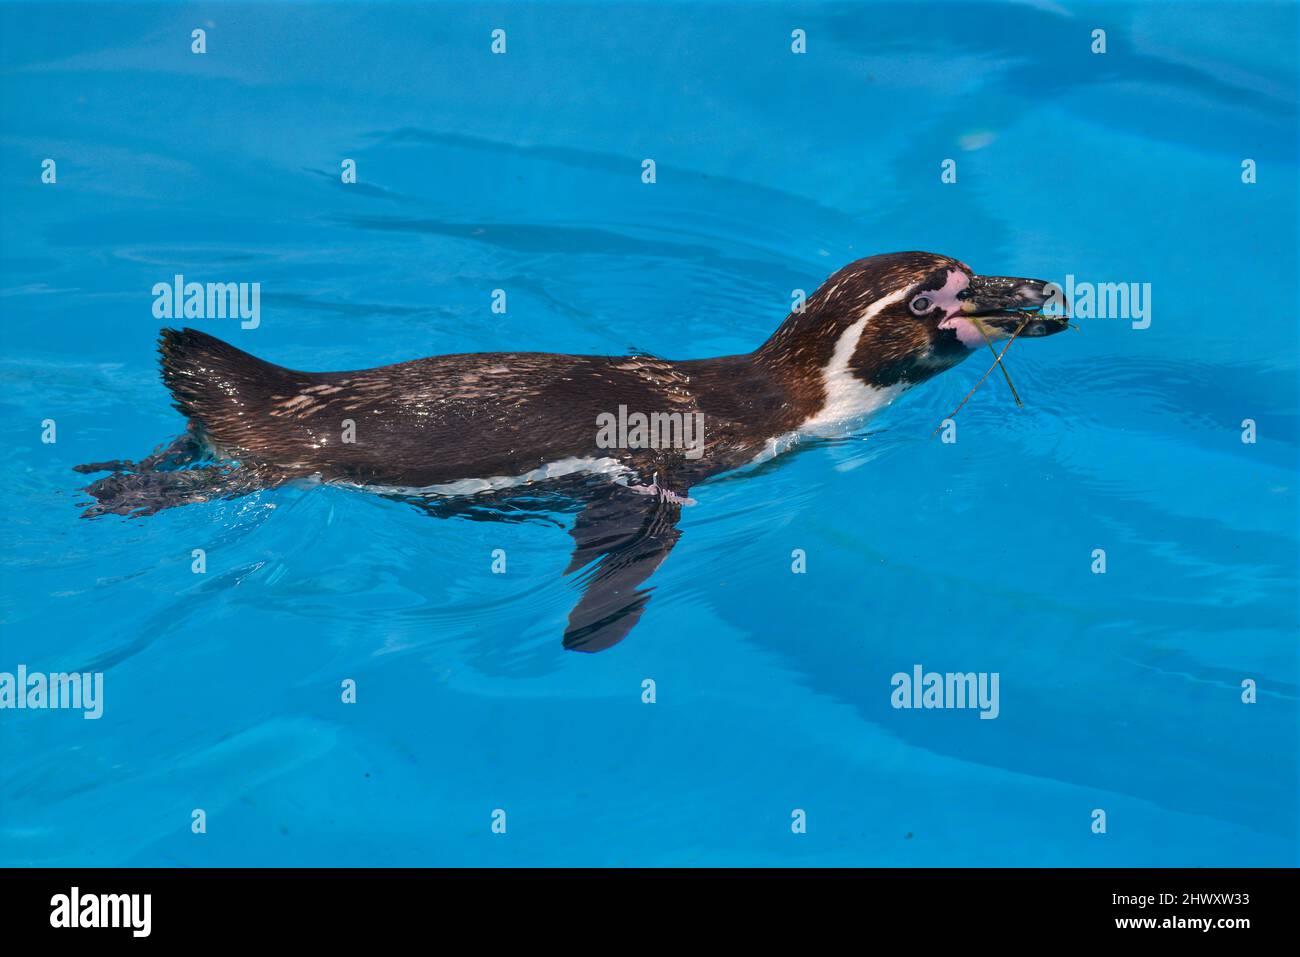 Der Humboldti-Pinguin (Spheniscus humboldti) schwimmt von oben gesehen auf blauem Wasser Stockfoto